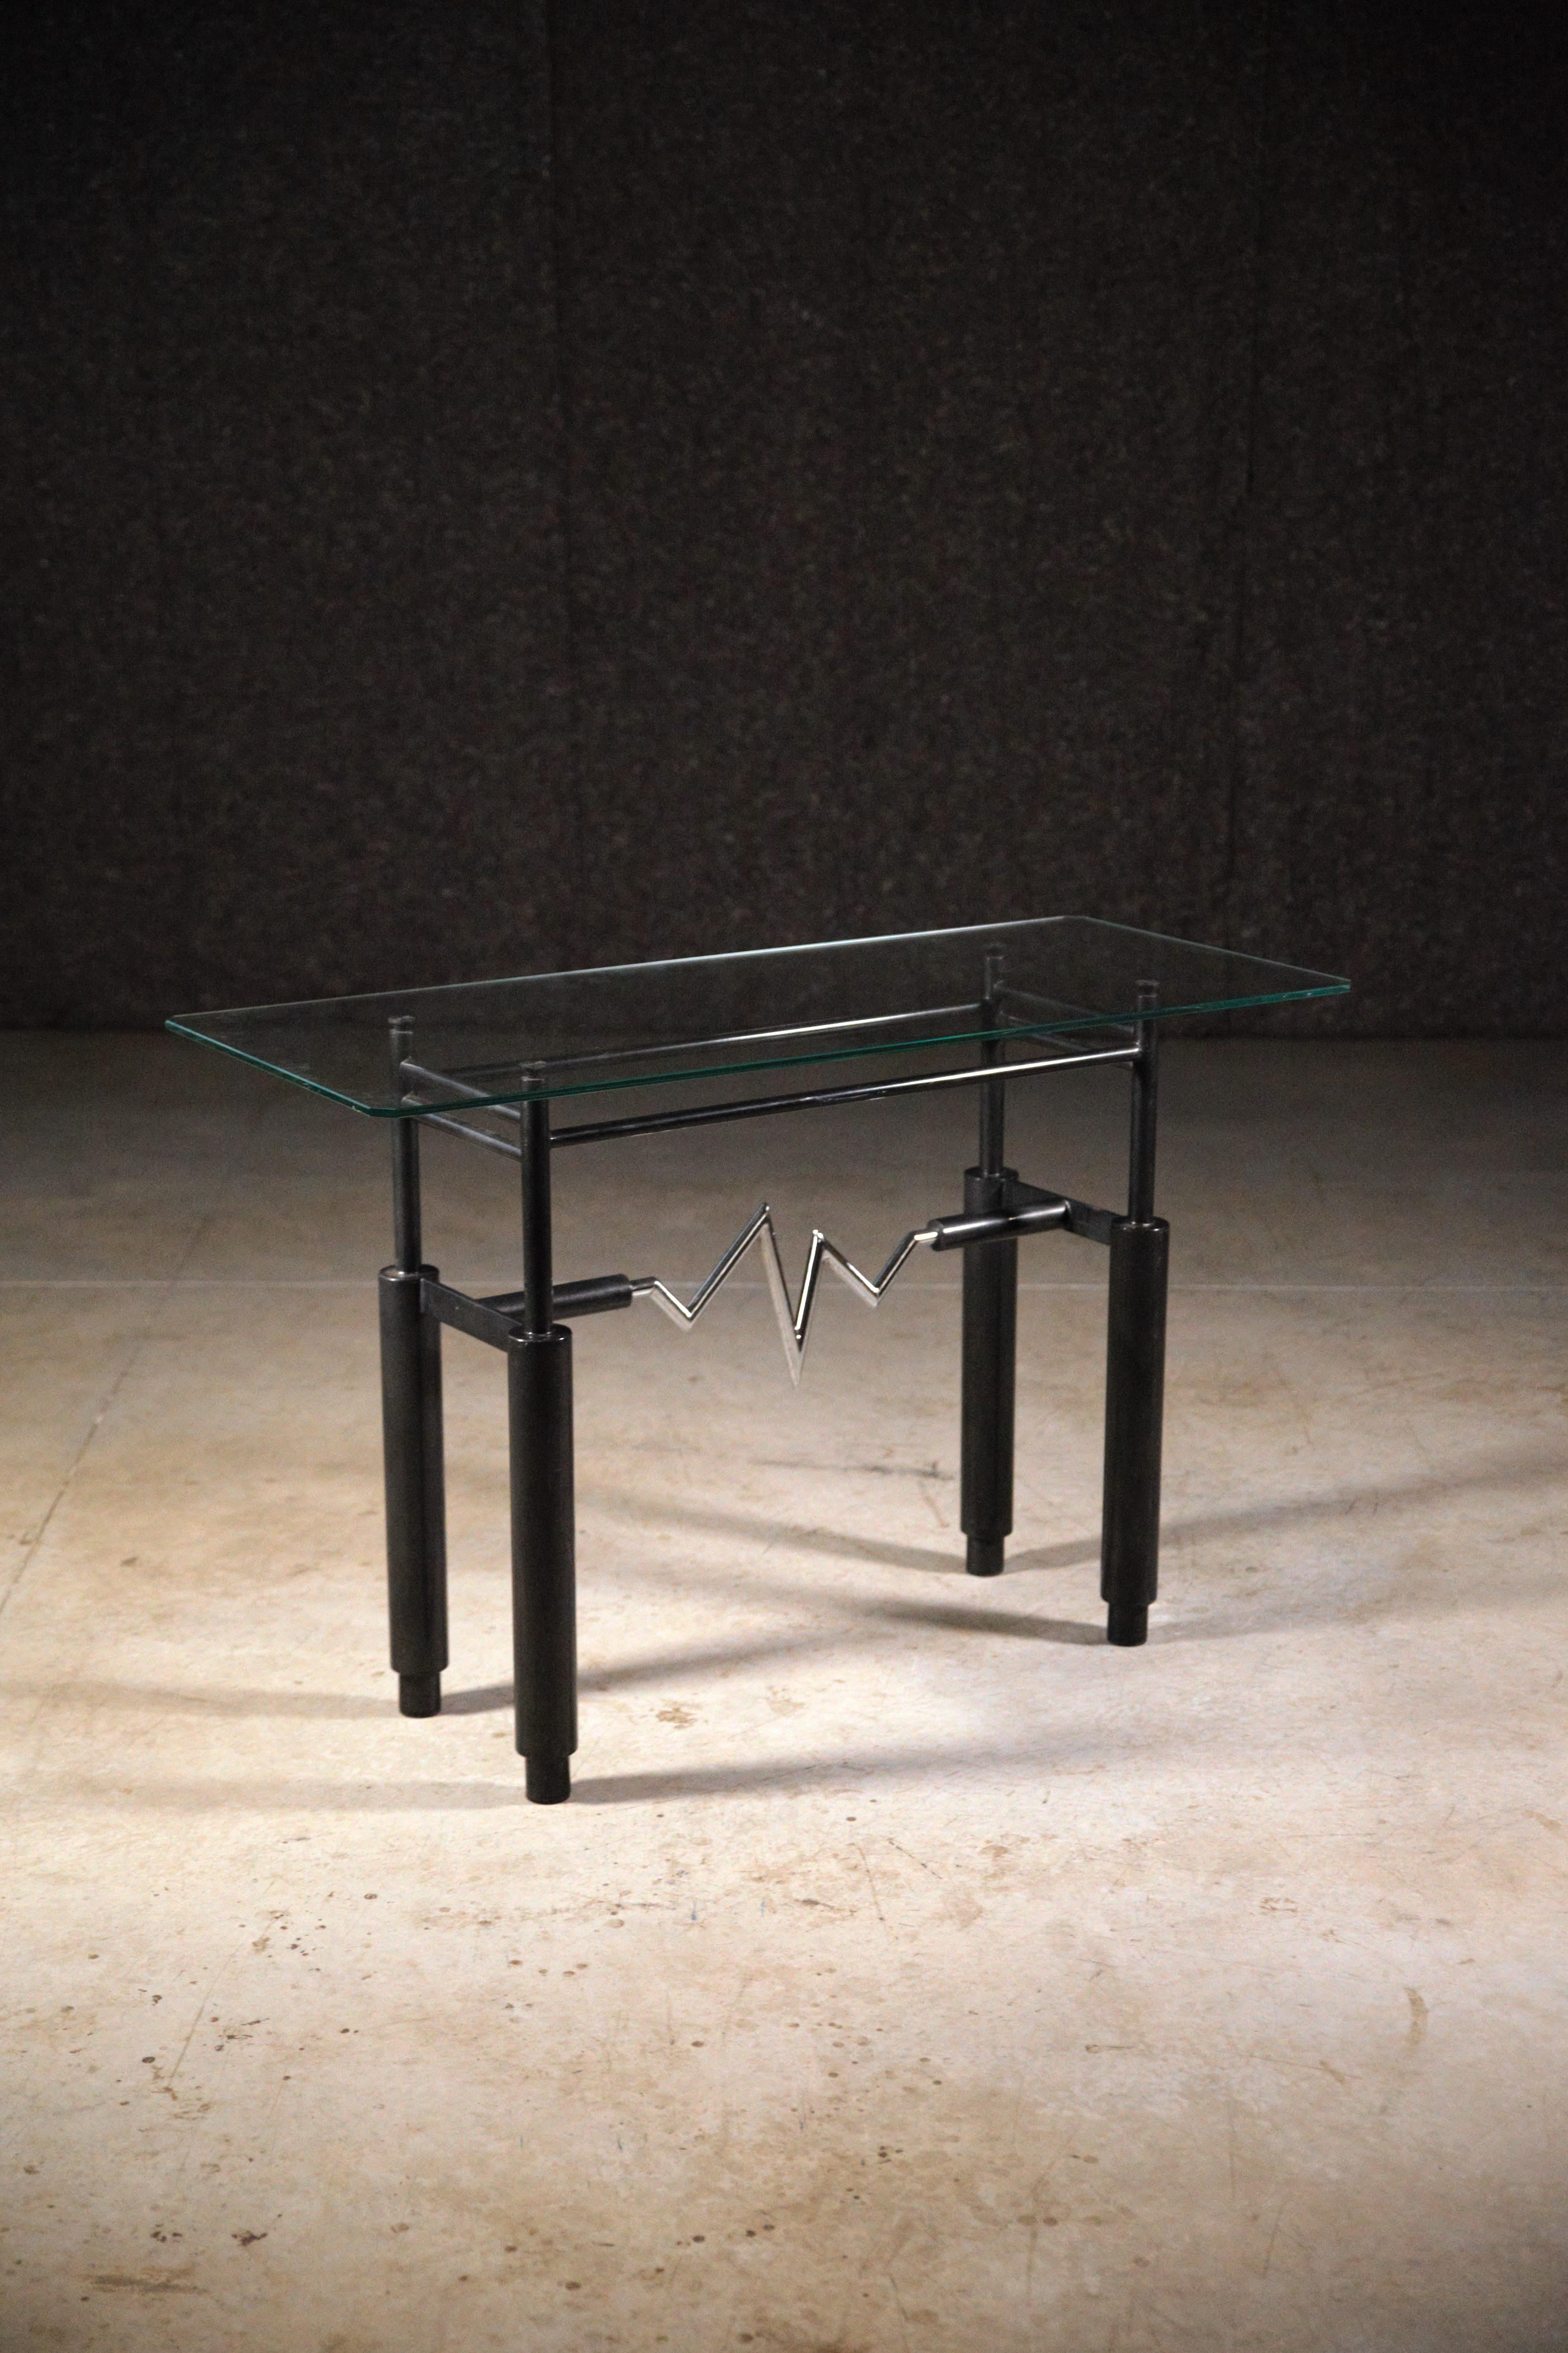 Table console de Leopold Gest France 1985.

Fabriqué en petites quantités.

Design/One typique des années 80.